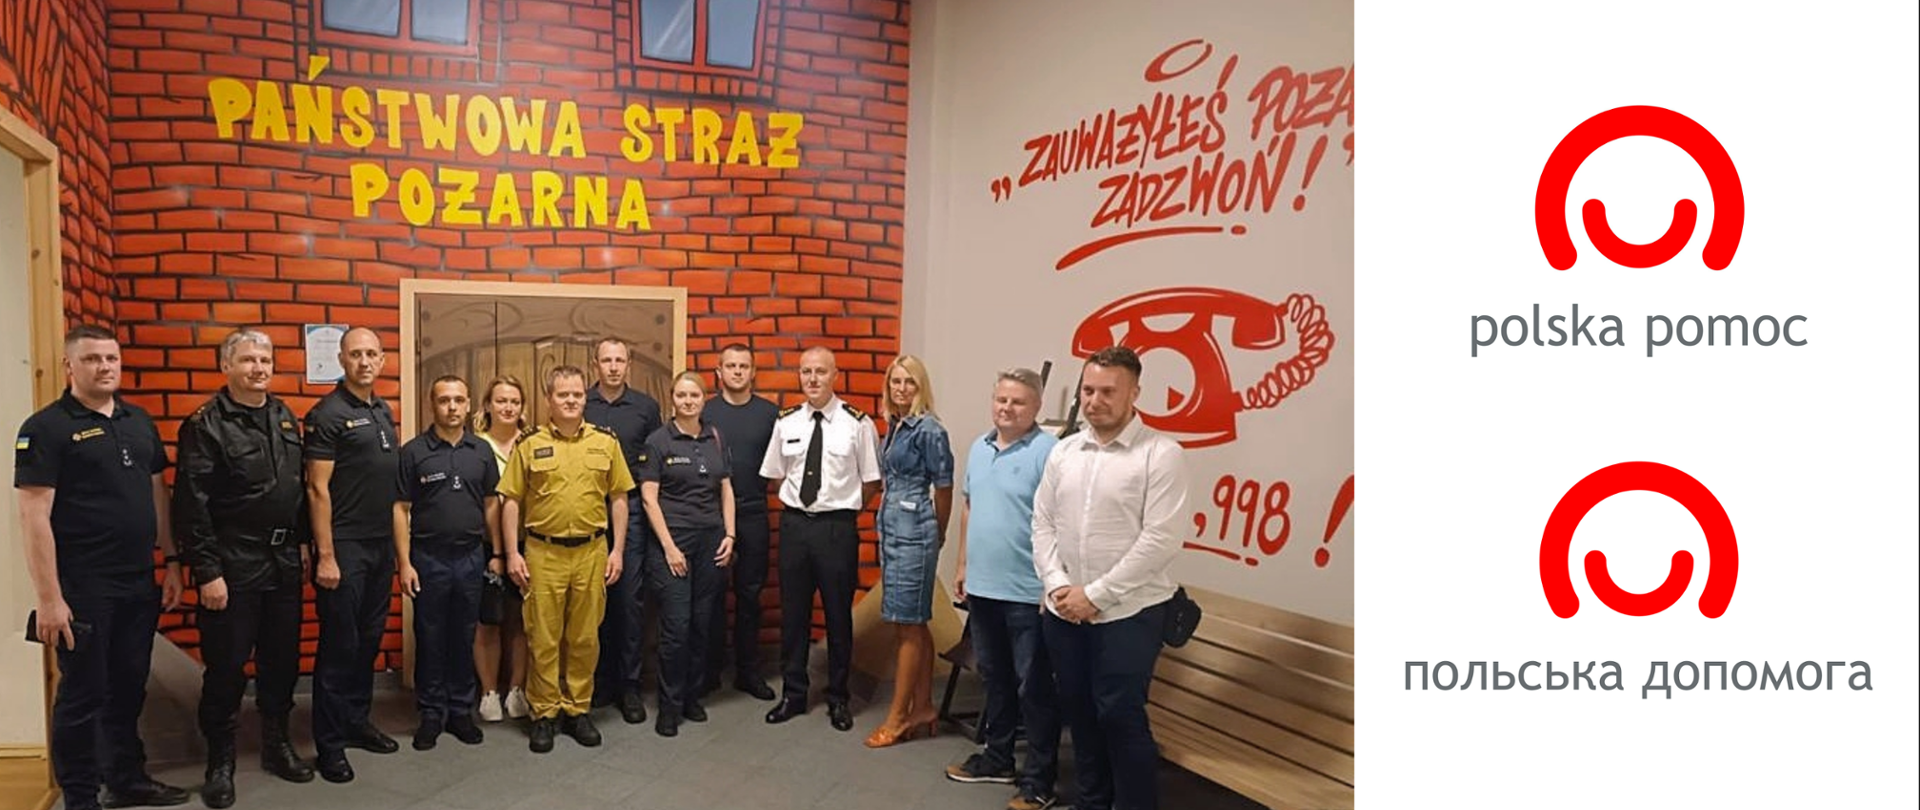 Polscy i ukraińscy strażacy pozują do grupowego zdjęcia w sali edukacyjnej, nad grupą na ścianie napis PAŃSTWOWA STRAŻ POŻARNA, po prawo na ścianie wizerunek telefonu i cyfry 998 oraz napis "Zauważyłeś pożar, zadzwoń!"